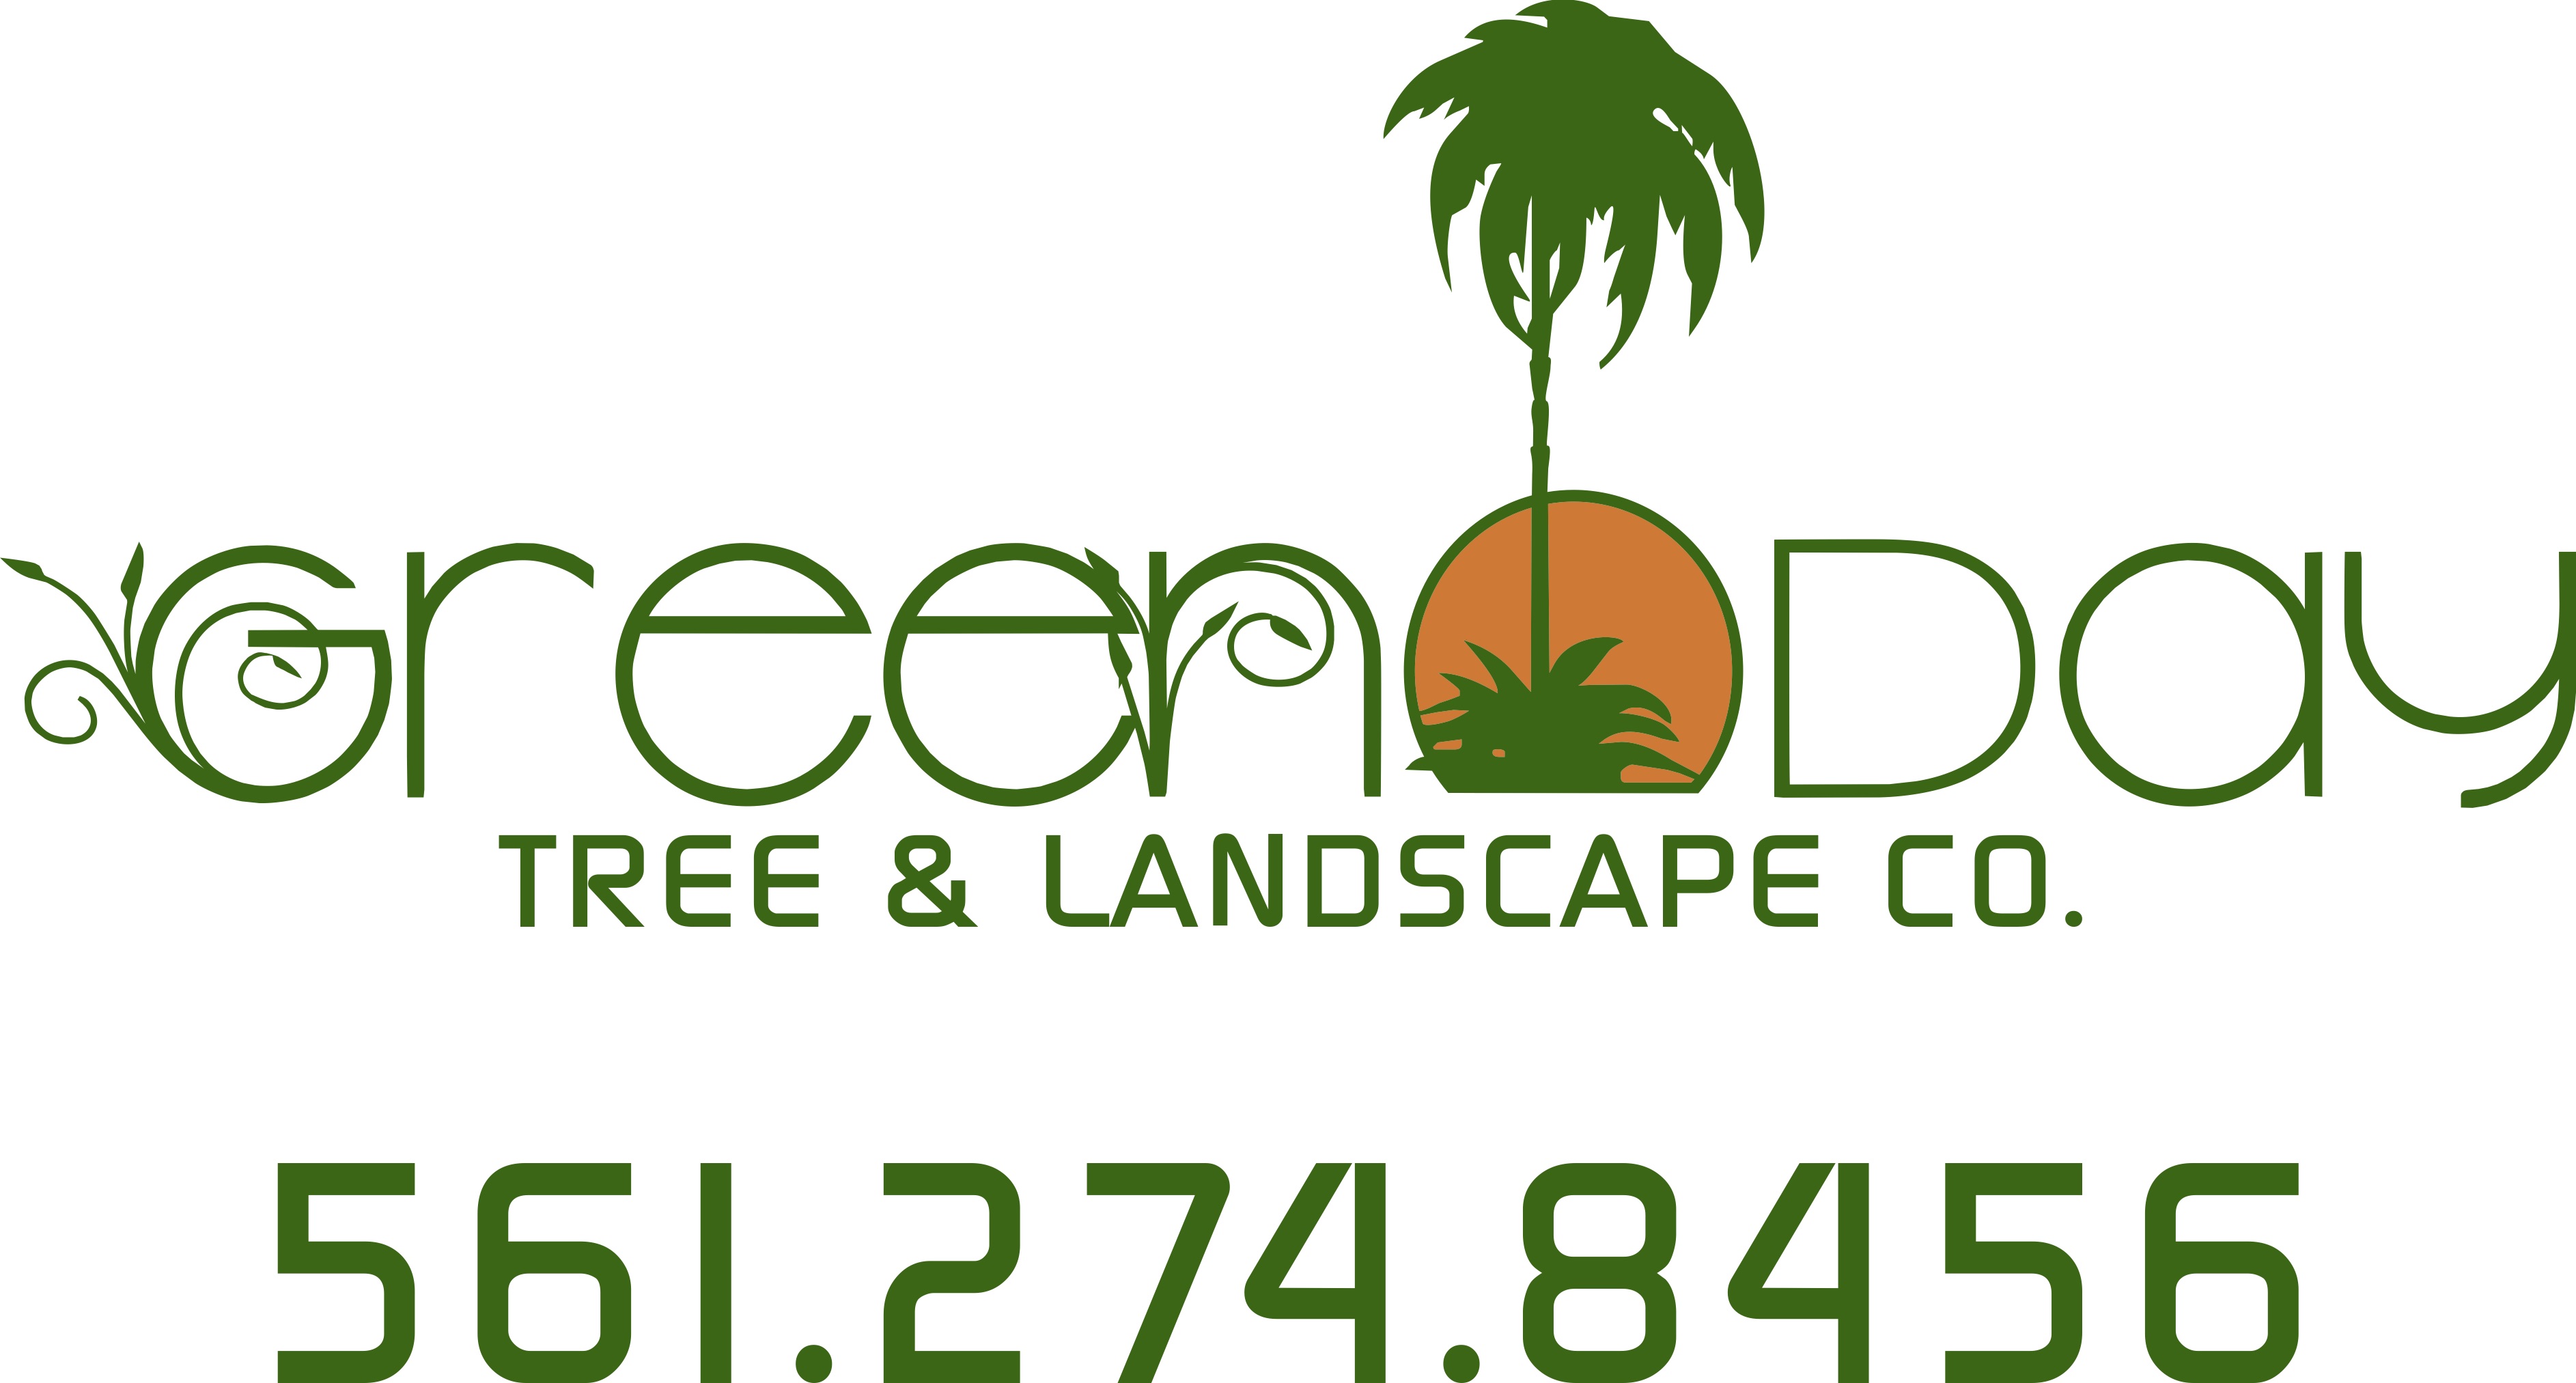 Green Day Tree & Landscape Company Logo